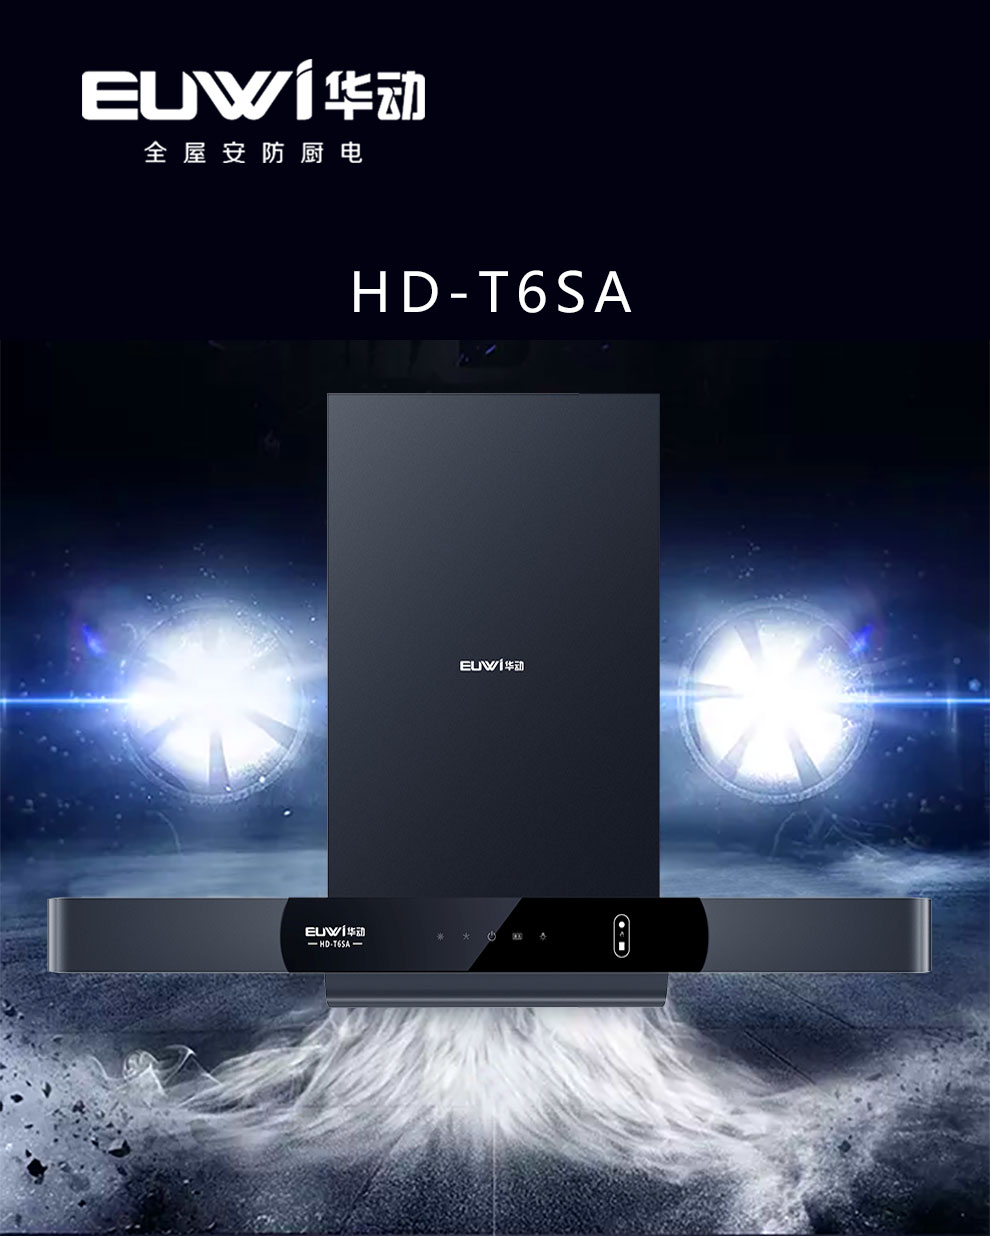 新品季|華動新品HD-T6SA吸油煙機榮耀上市！ 華動廚衛 華動廚衛電器 3天前